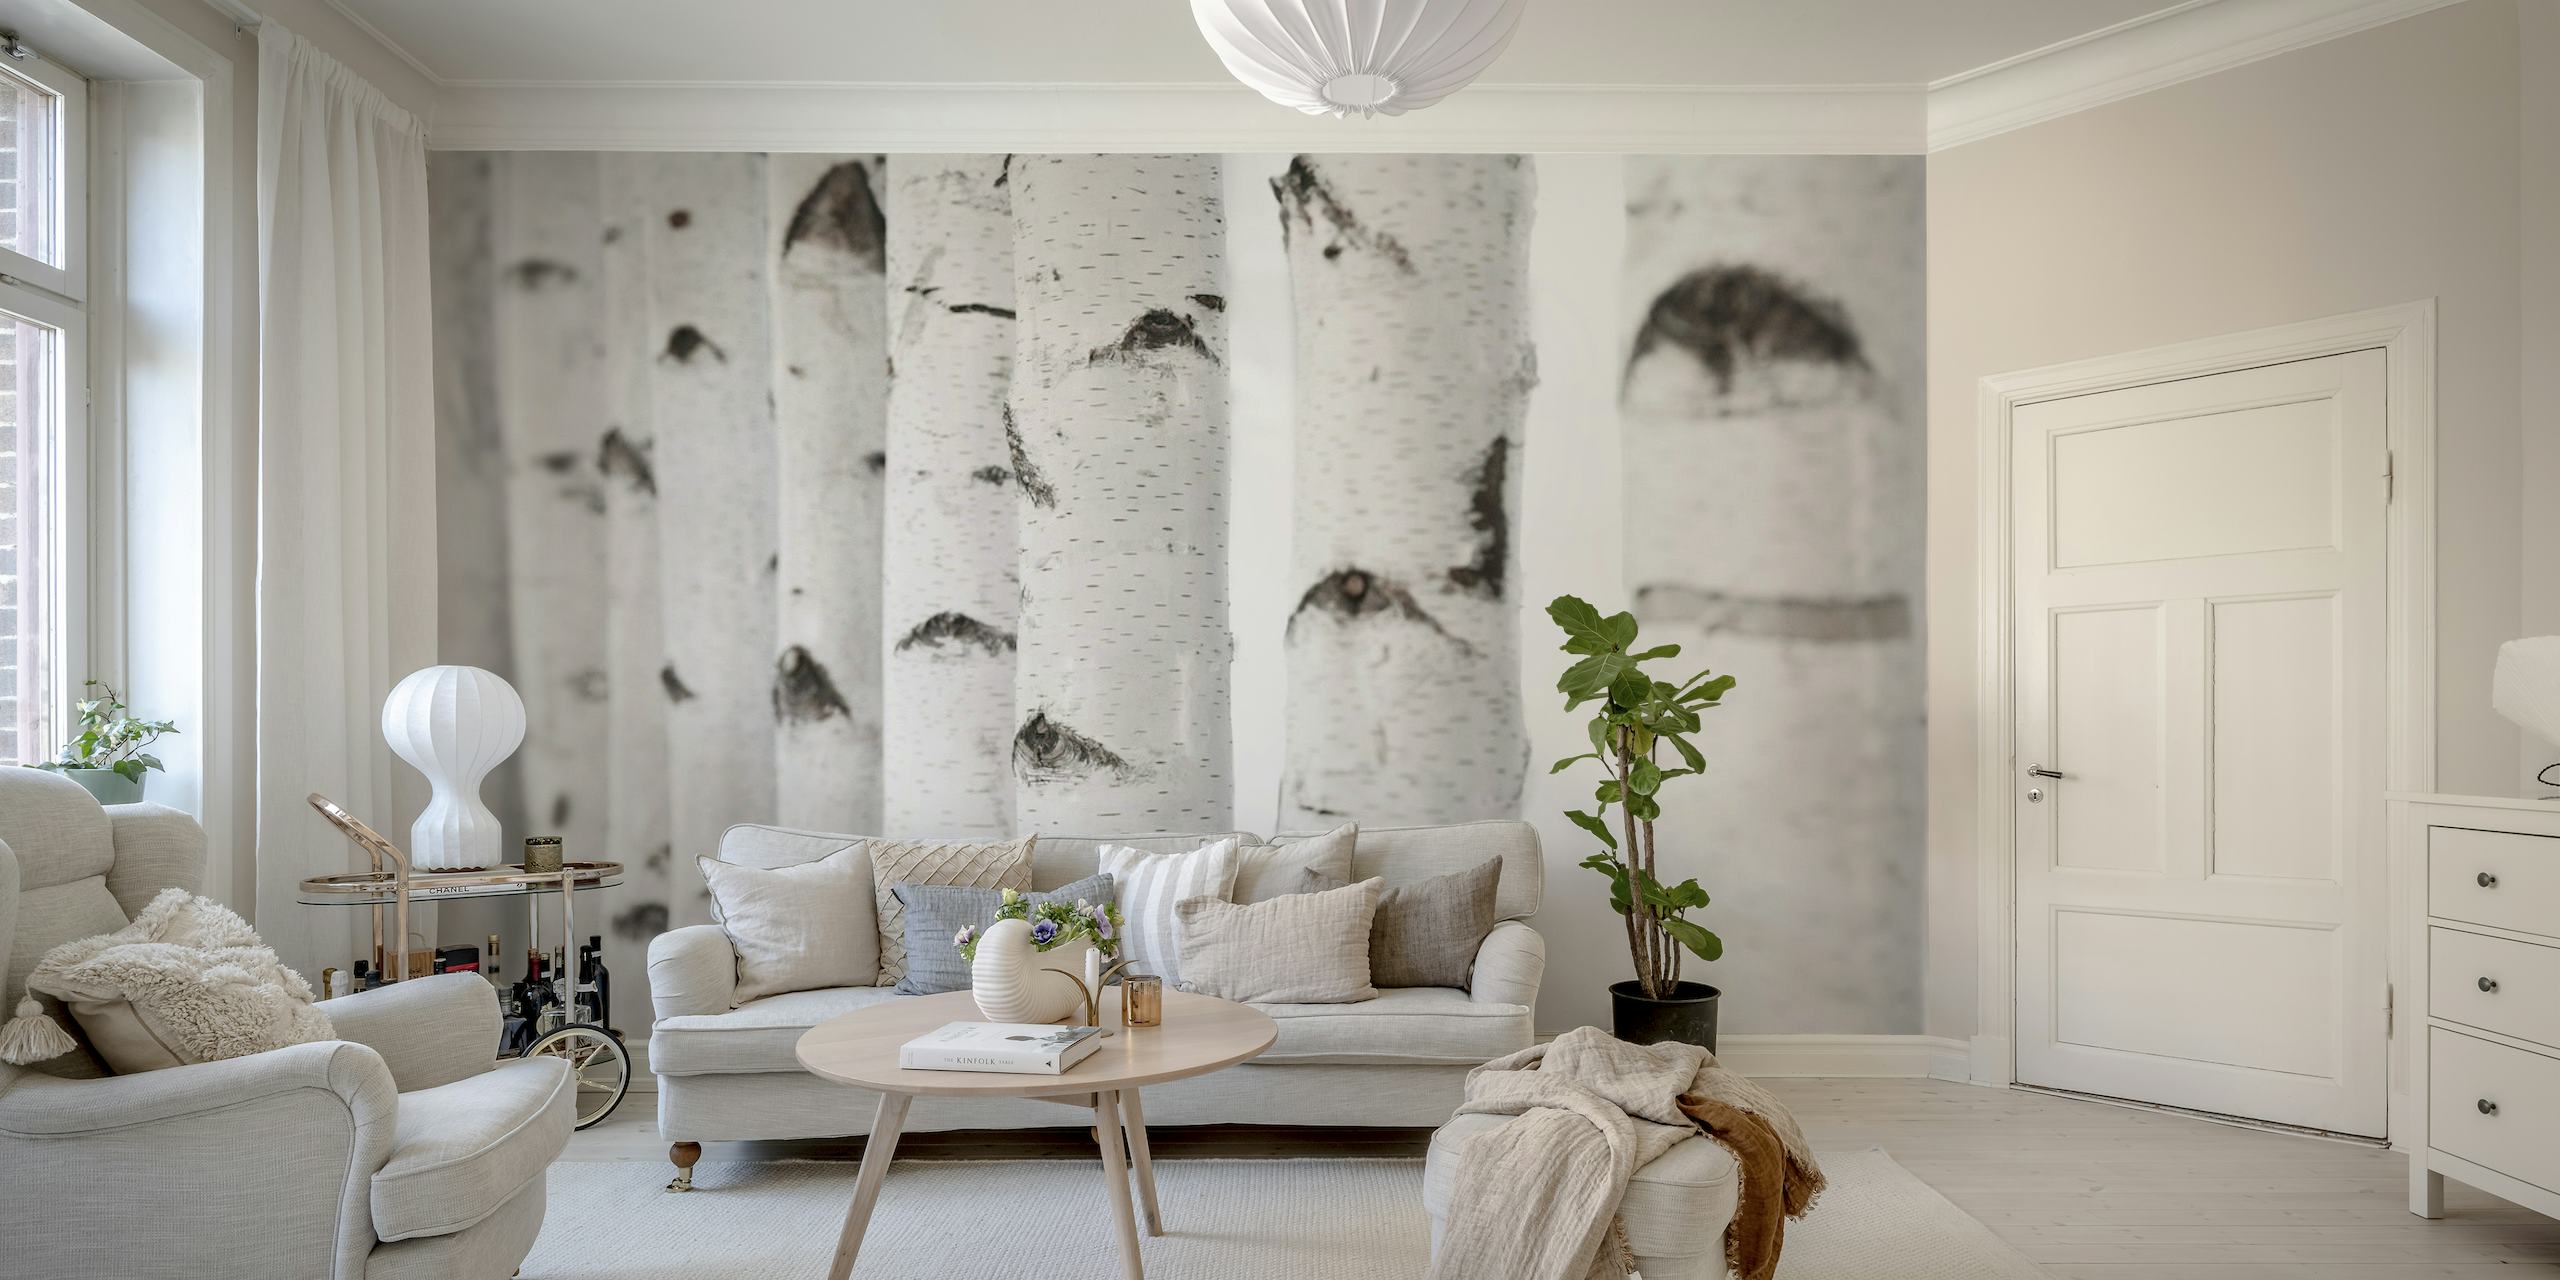 Une murale représentant une vue rapprochée de troncs de bouleau blanc avec des marques noires, idéale pour la décoration intérieure.